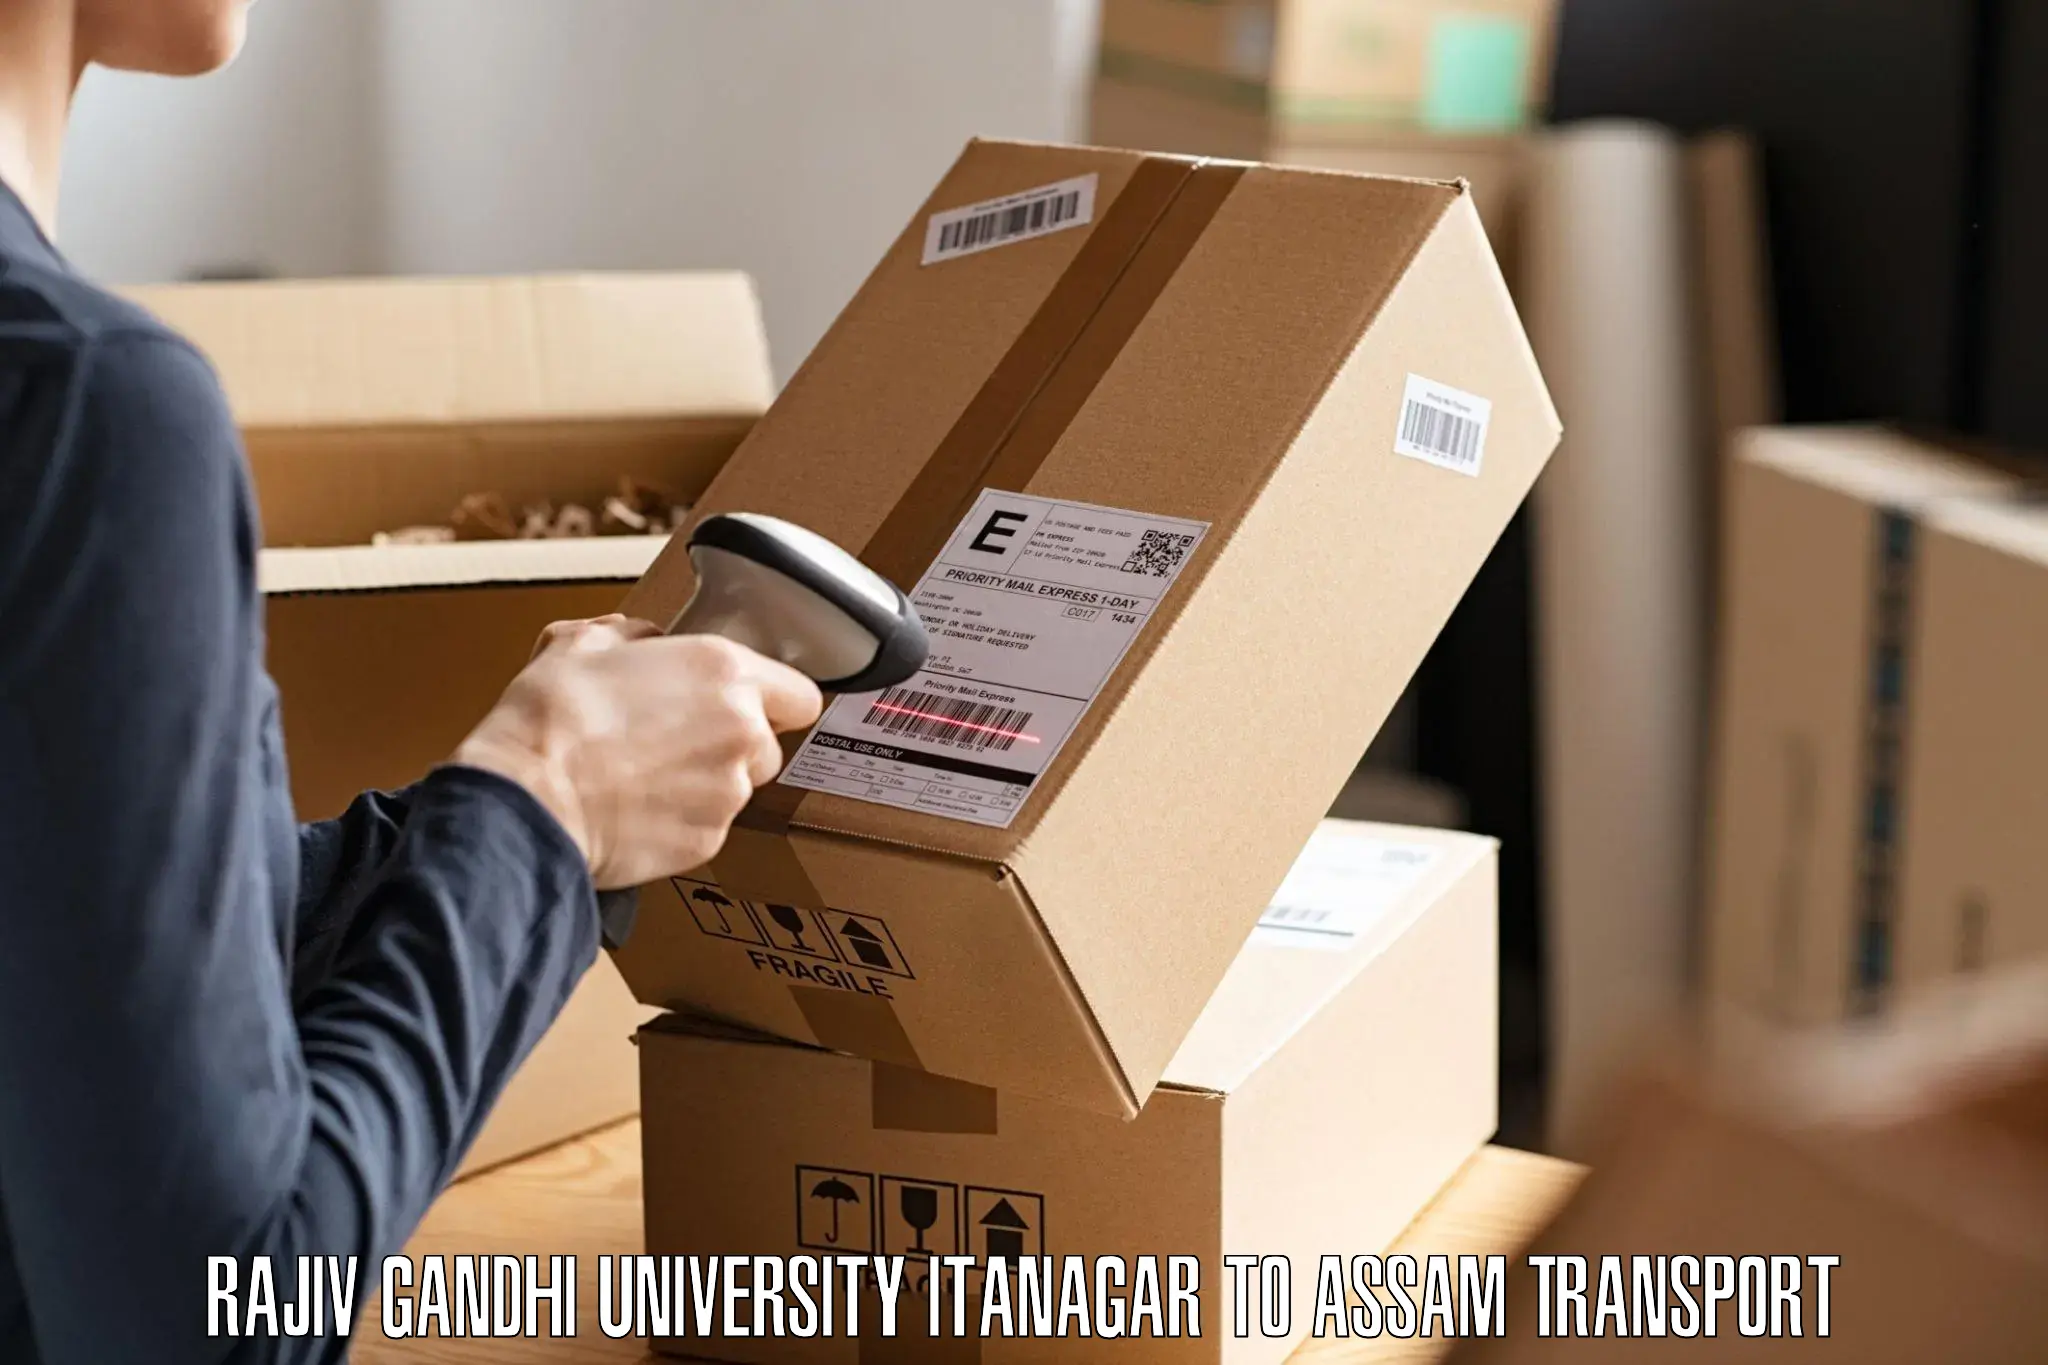 Online transport booking in Rajiv Gandhi University Itanagar to Karbi Anglong